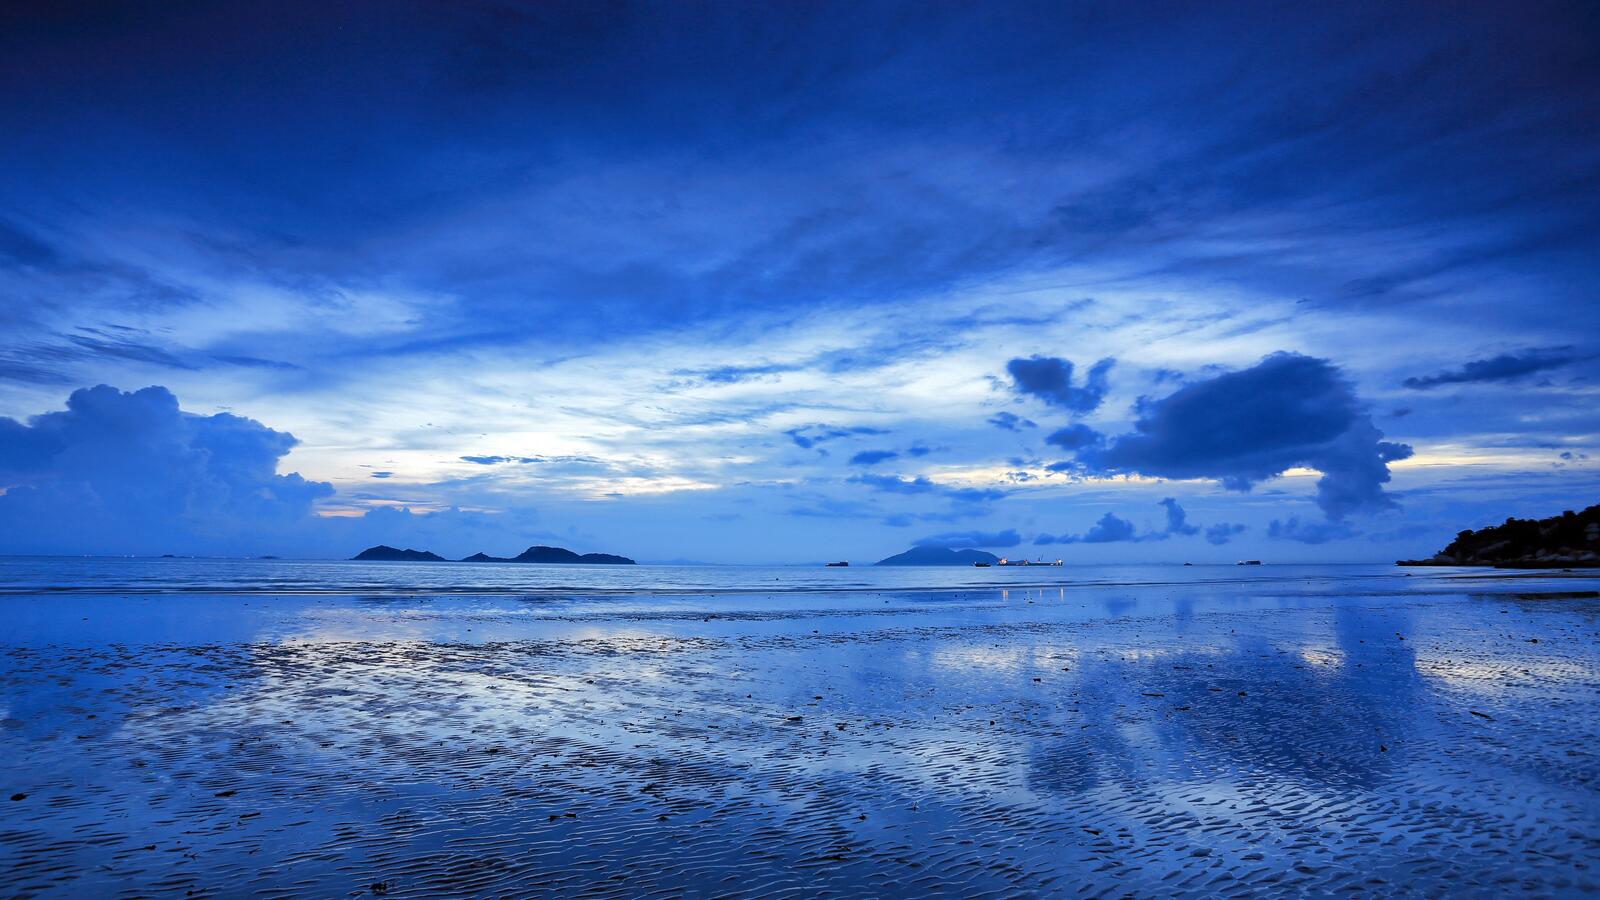 Бесплатное фото Синий океан с голубым небом